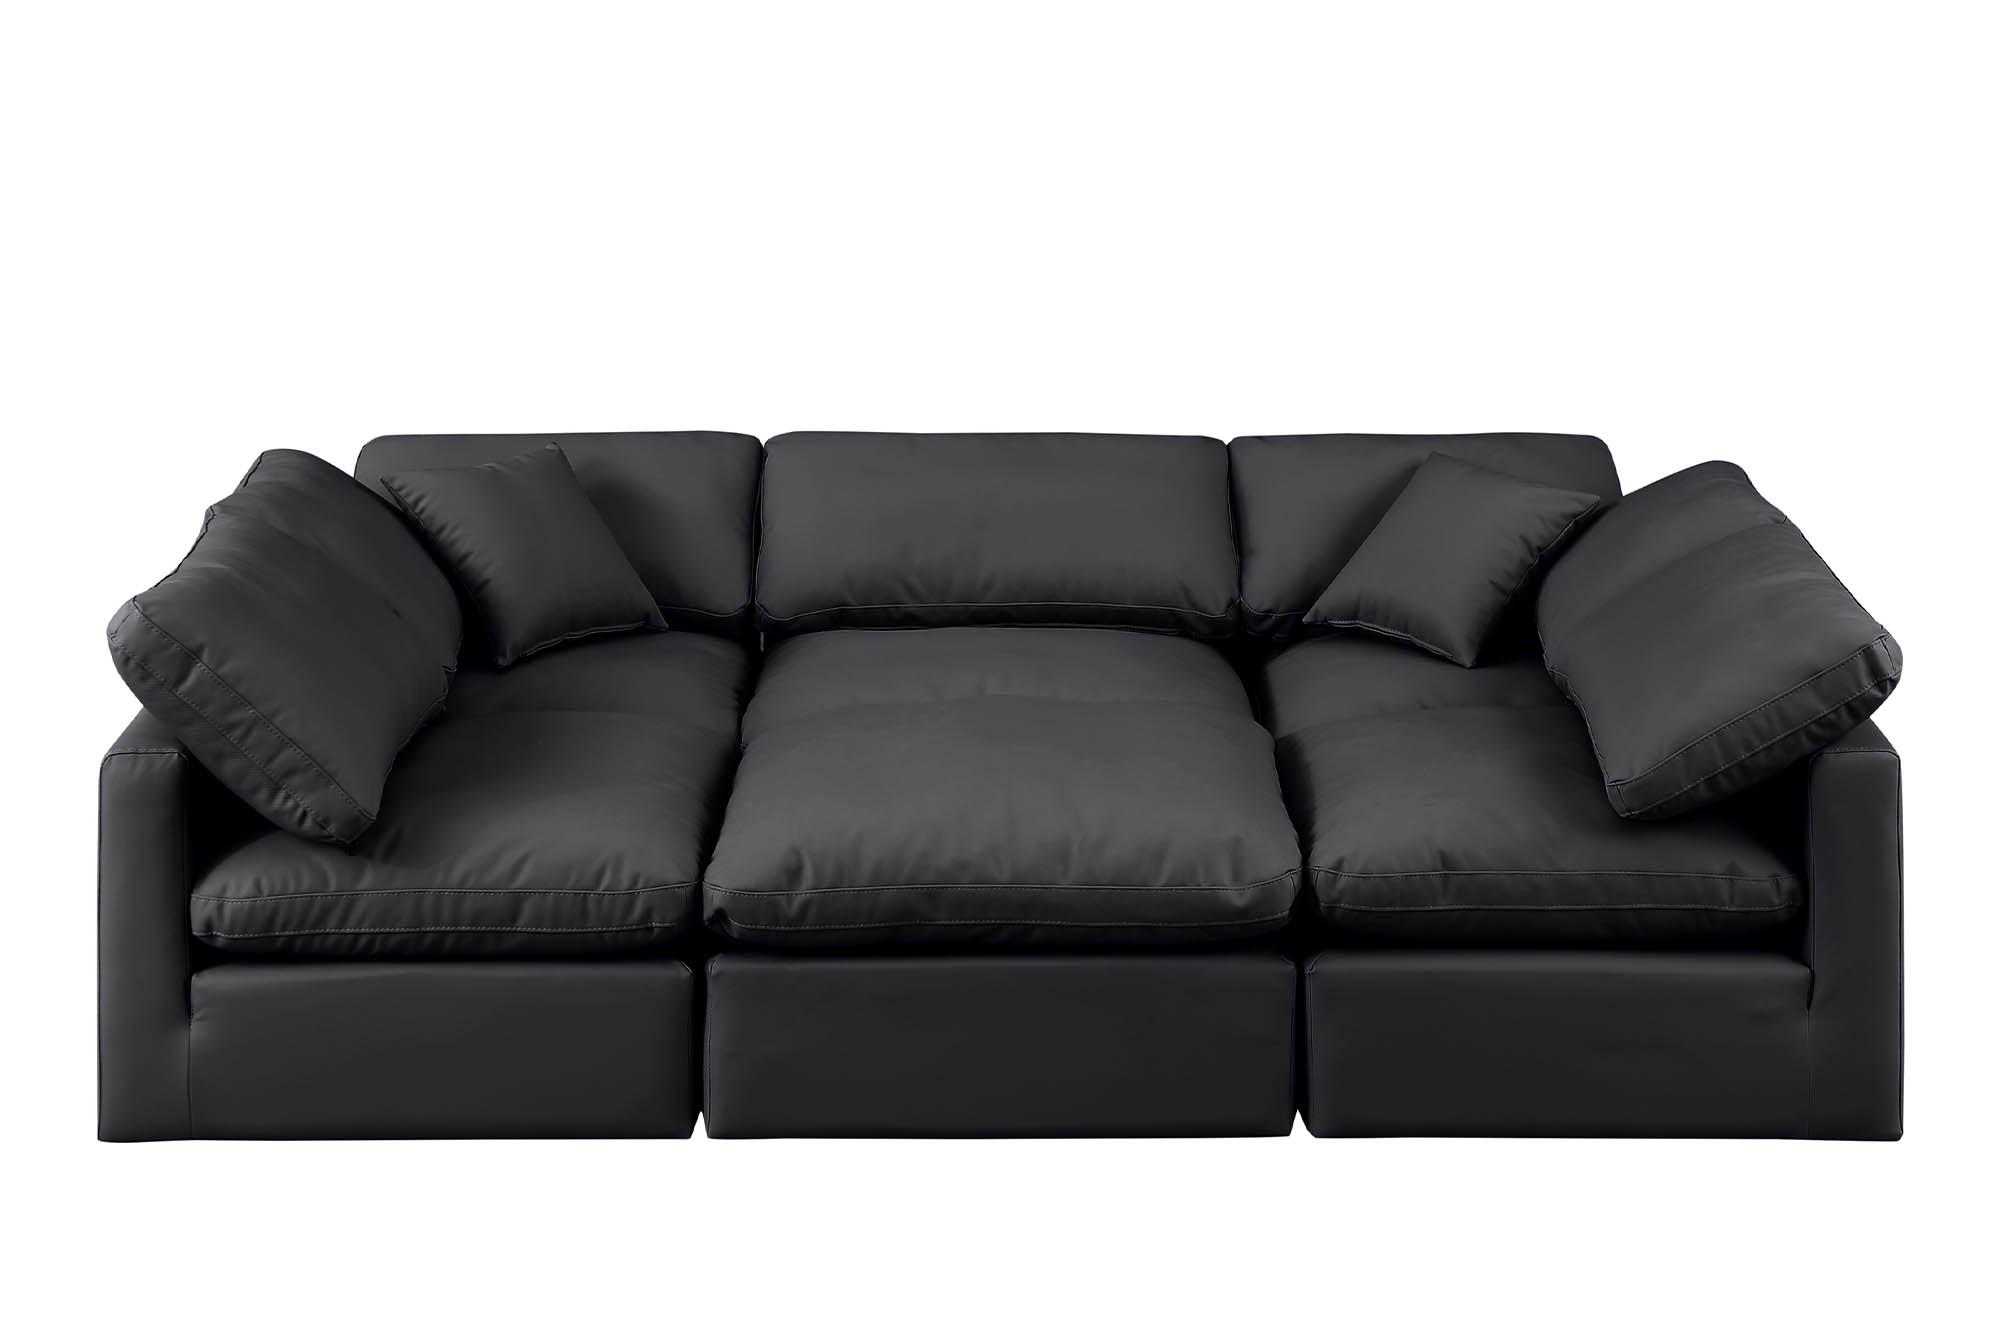 

    
Meridian Furniture INDULGE 146Black-Sec6C Modular Sectional Sofa Black 146Black-Sec6C
